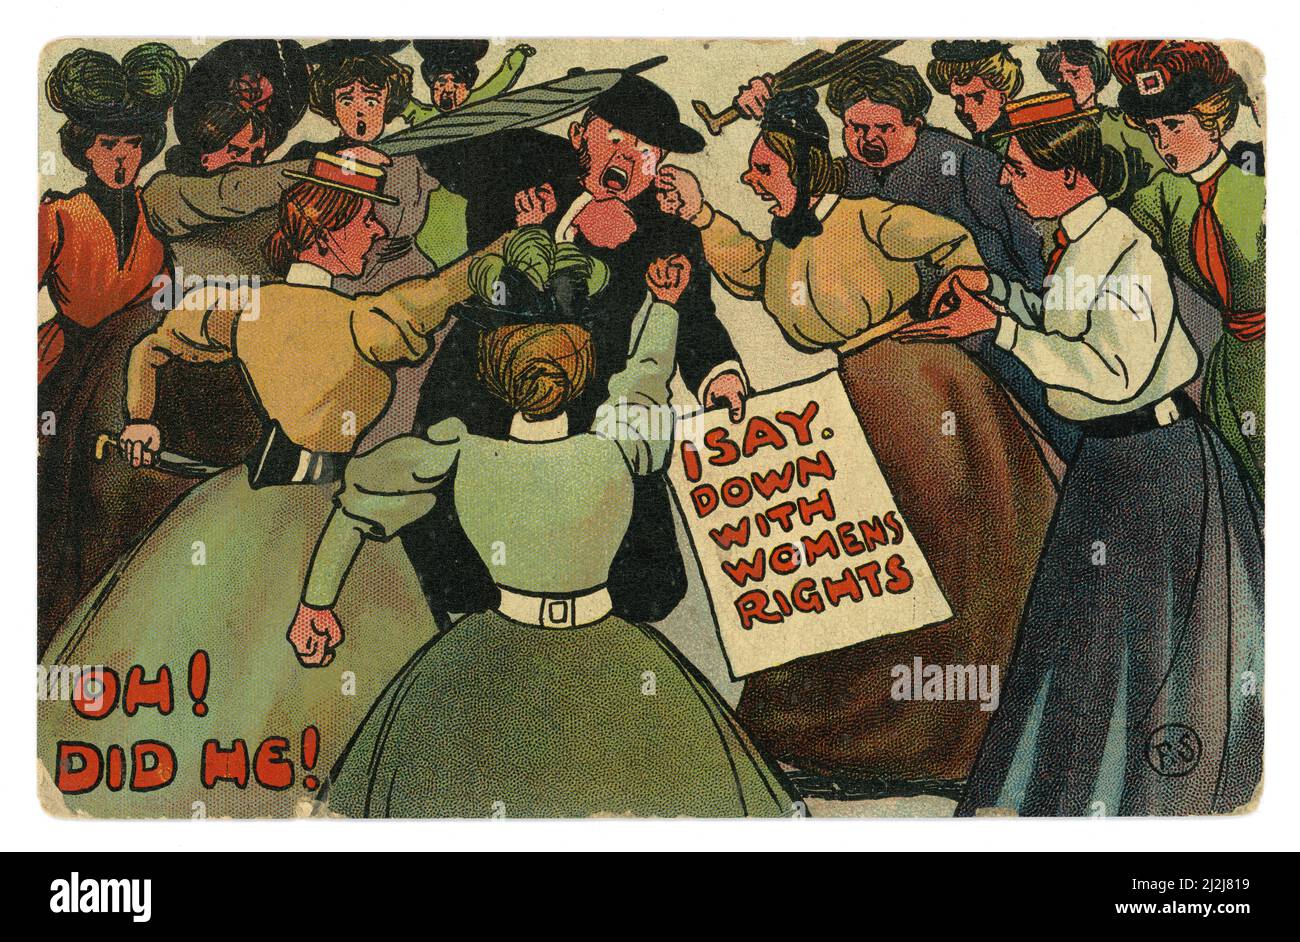 Carte postale originale de la bande dessinée en couleur de l'époque édouardienne d'une foule de suffragettes violentes et en colère qui veulent l'égalité des droits des hommes, en montant un homme portant un écriteau qui se lit « Je dis avec les droits des femmes », daté / posté le 5 septembre 1907, Royaume-Uni Banque D'Images